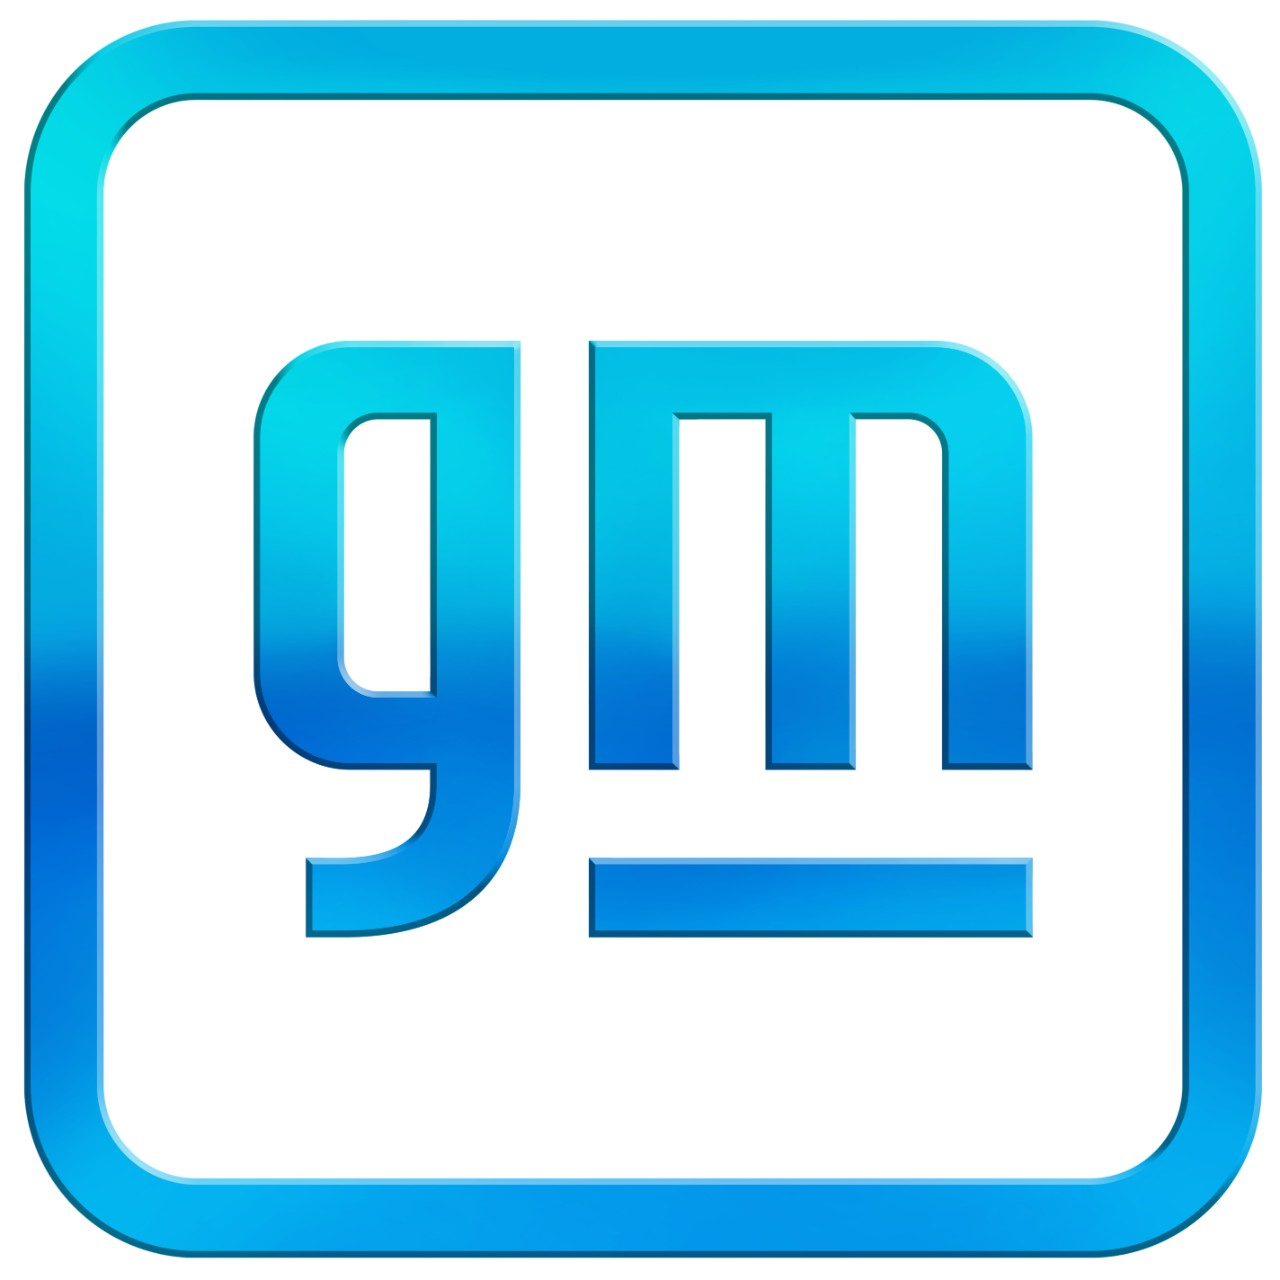 General Motors - Austin IT Innovation Center logo